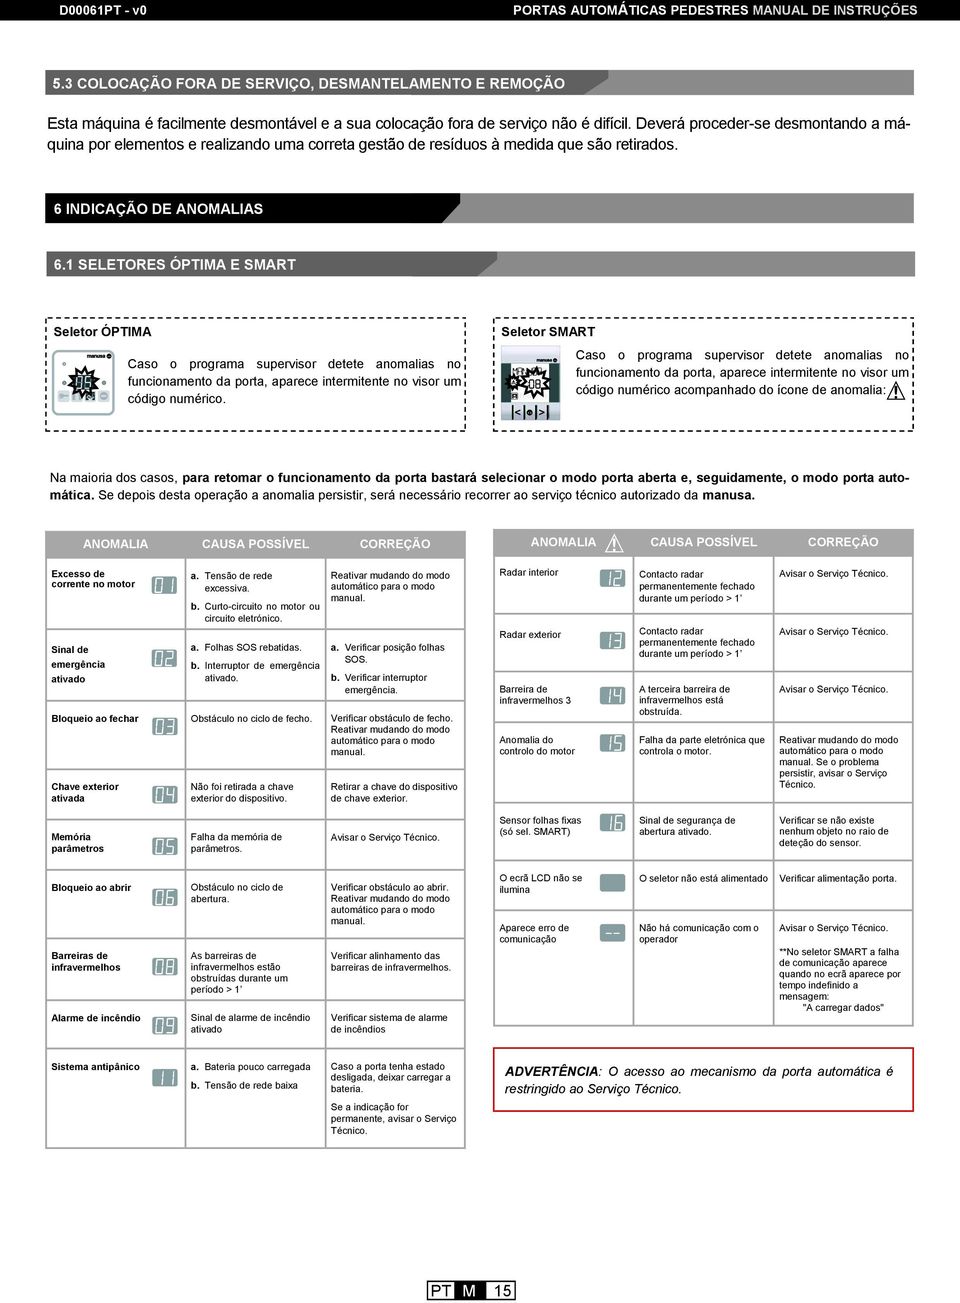 manual de instruções Portas automáticas pedestres de correr - PDF Download  grátis